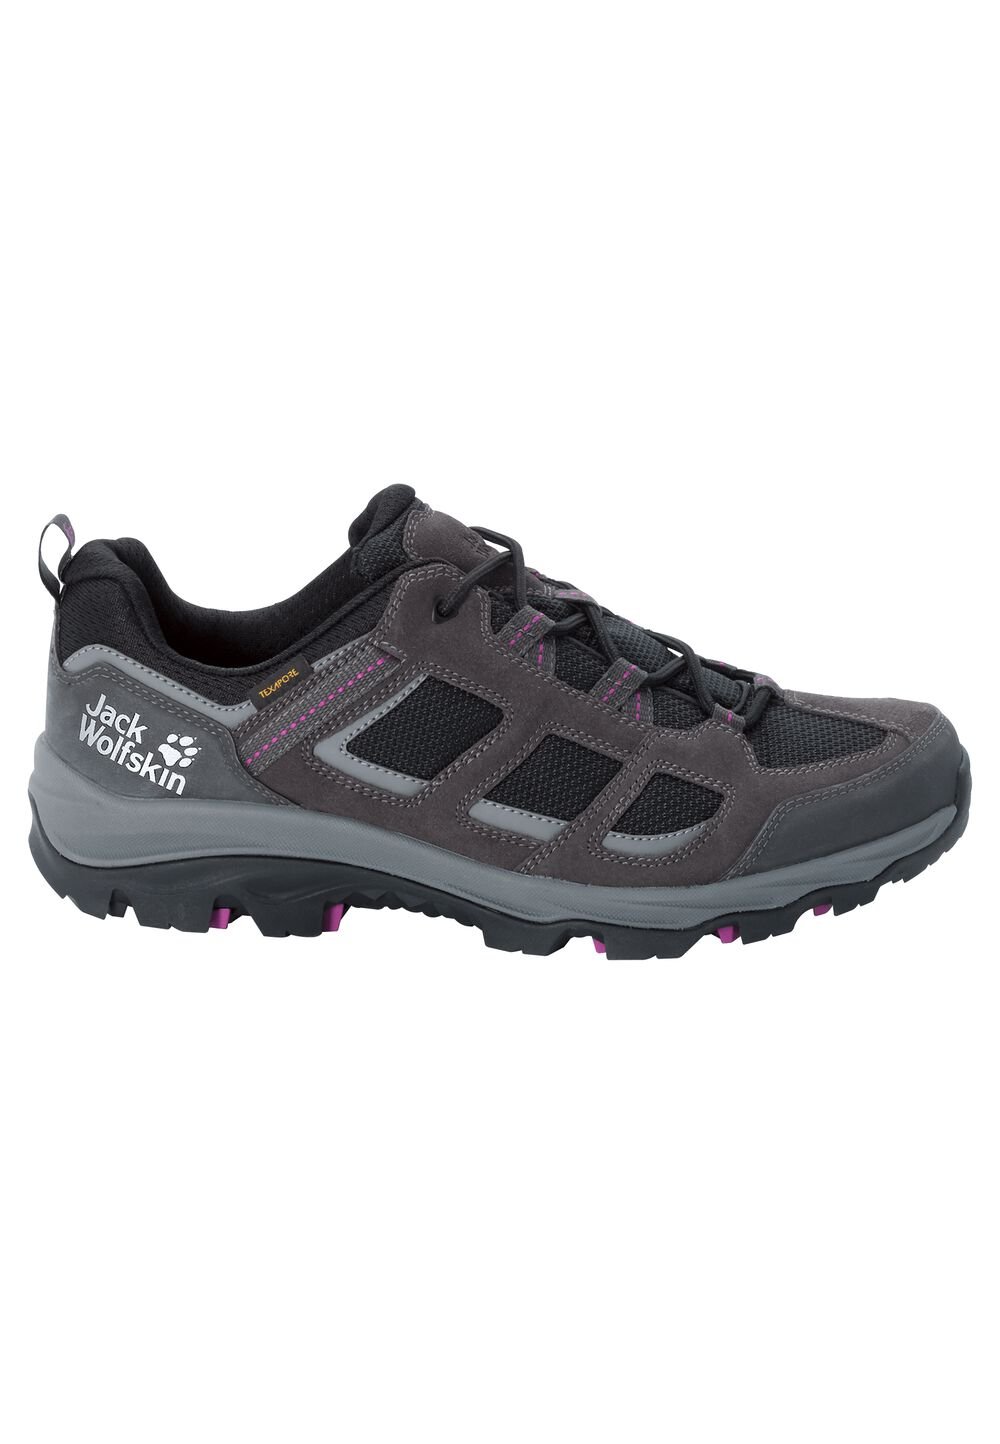 Chaussures de randonnée imperméables femmes Vojo 3 Texapore Low Women 3,5 gris dark steel / purple